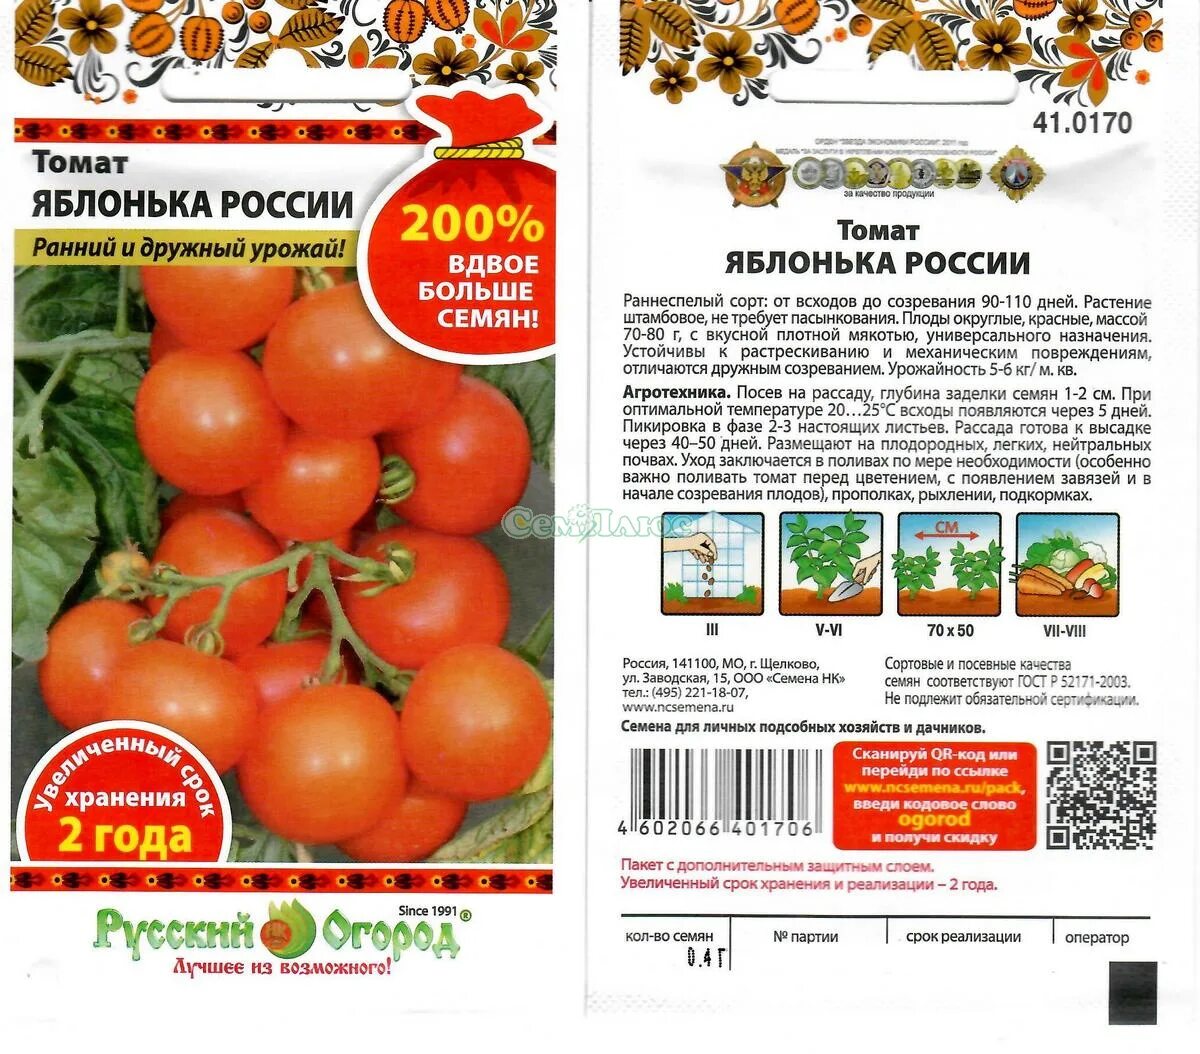 Яблонька россии томат характеристика и описание сорта